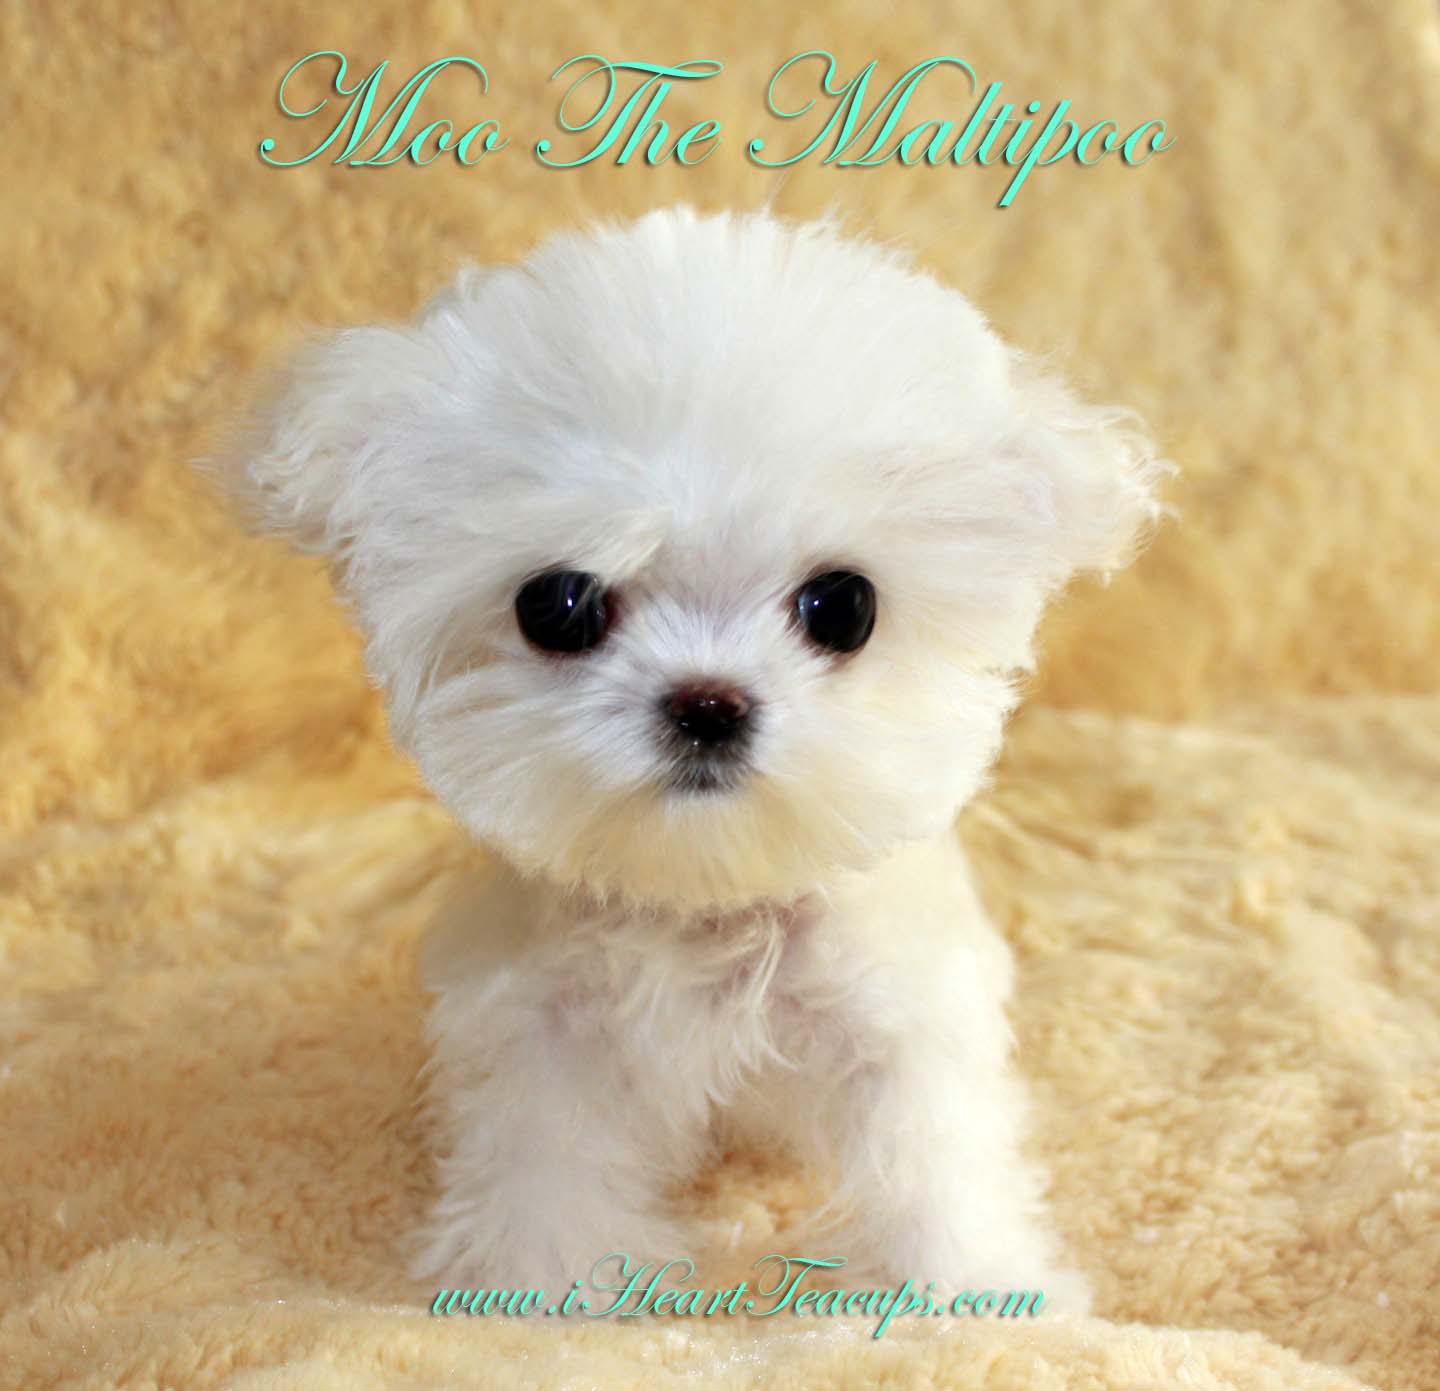 Maltese poodle mix, Maltese poodle and Poodle mix on Pinterest